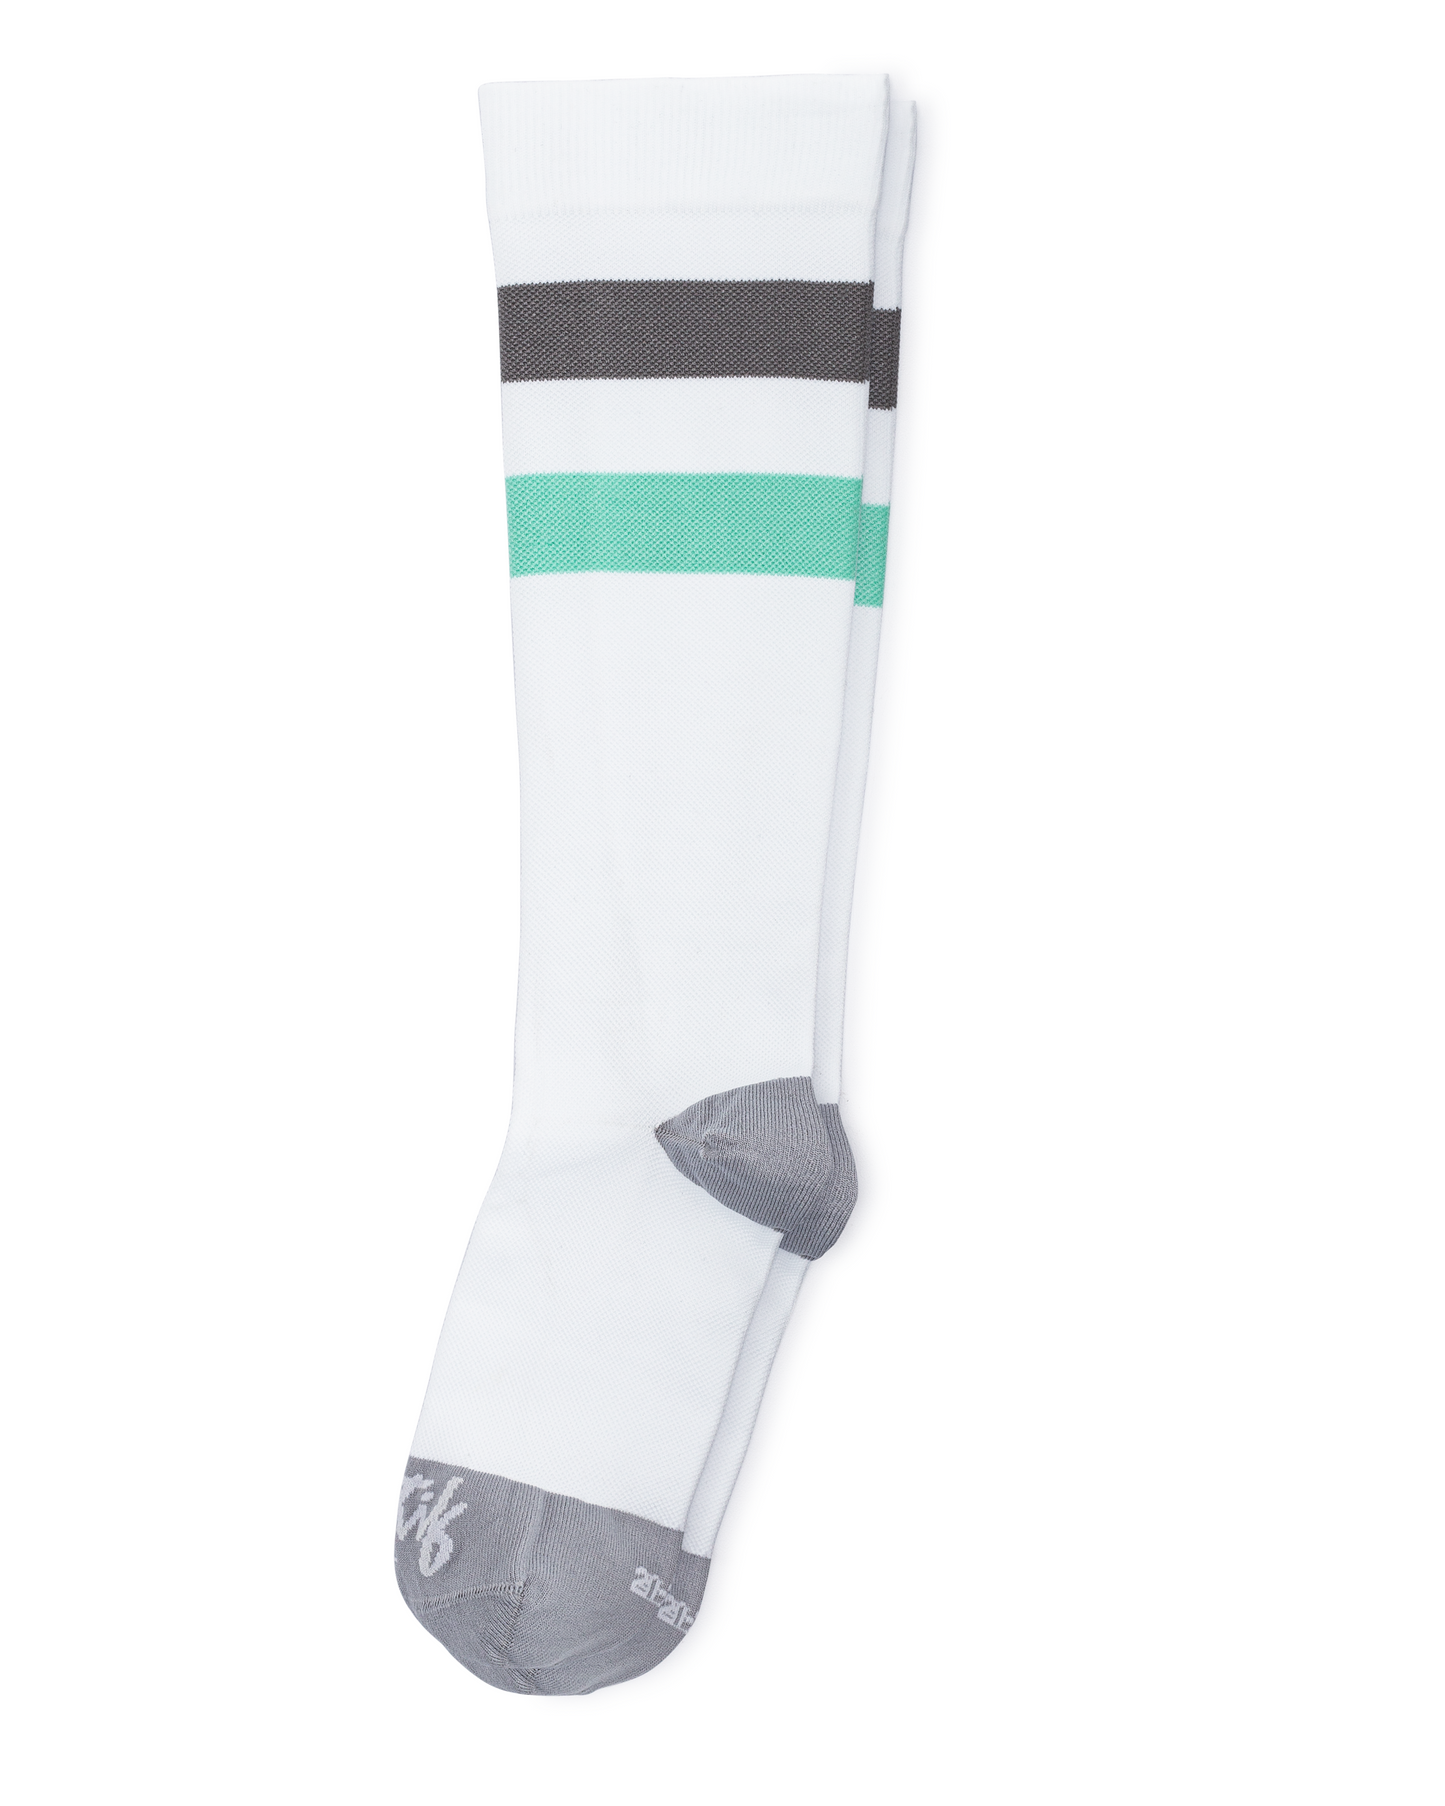 
                  
                    Compression Socks - Teal Stripes
                  
                